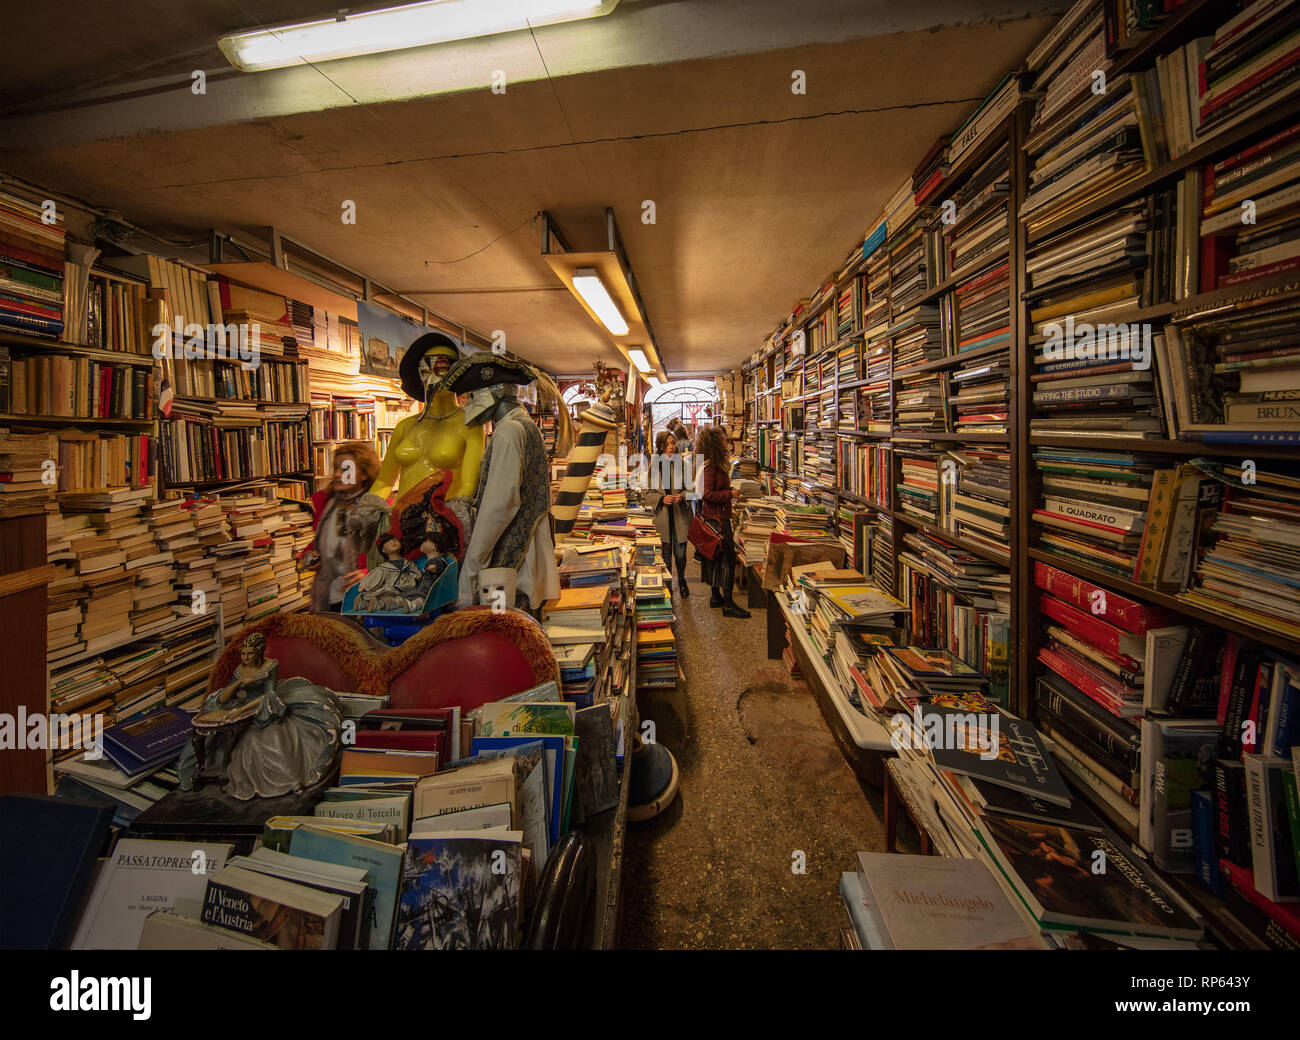 Uno dei venice grande po' trova è l'Aqua Alta bookshop. Foto Stock